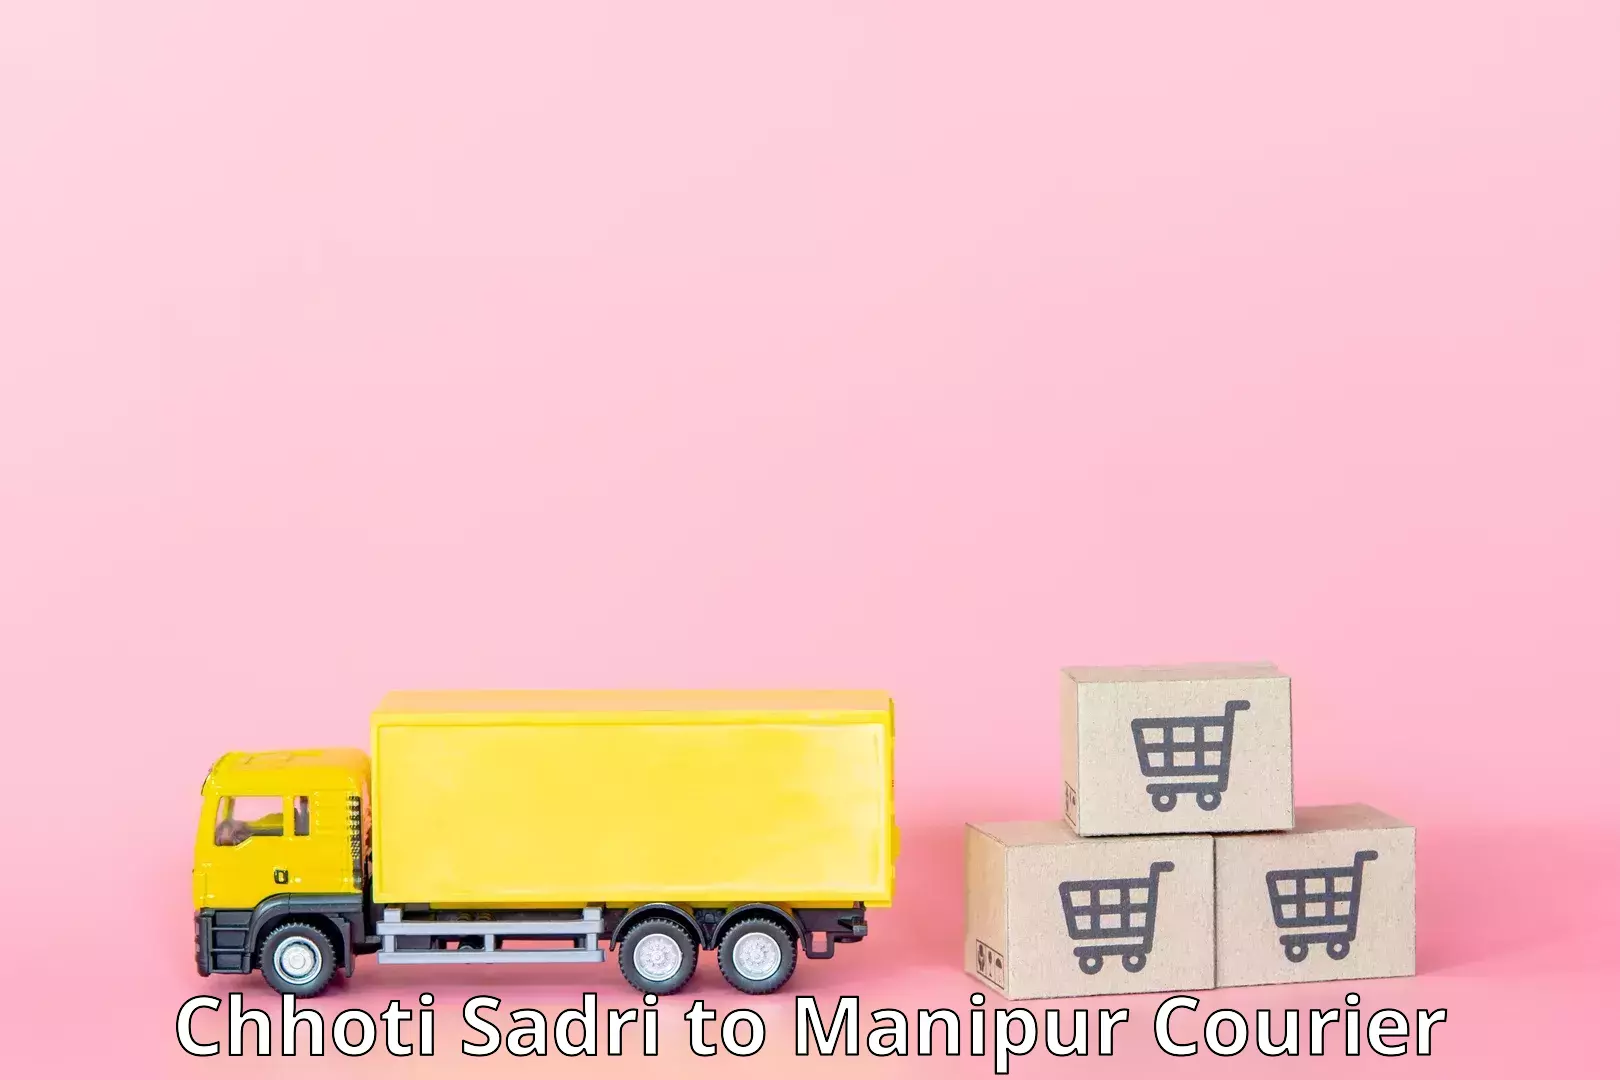 Multi-national courier services Chhoti Sadri to Moirang